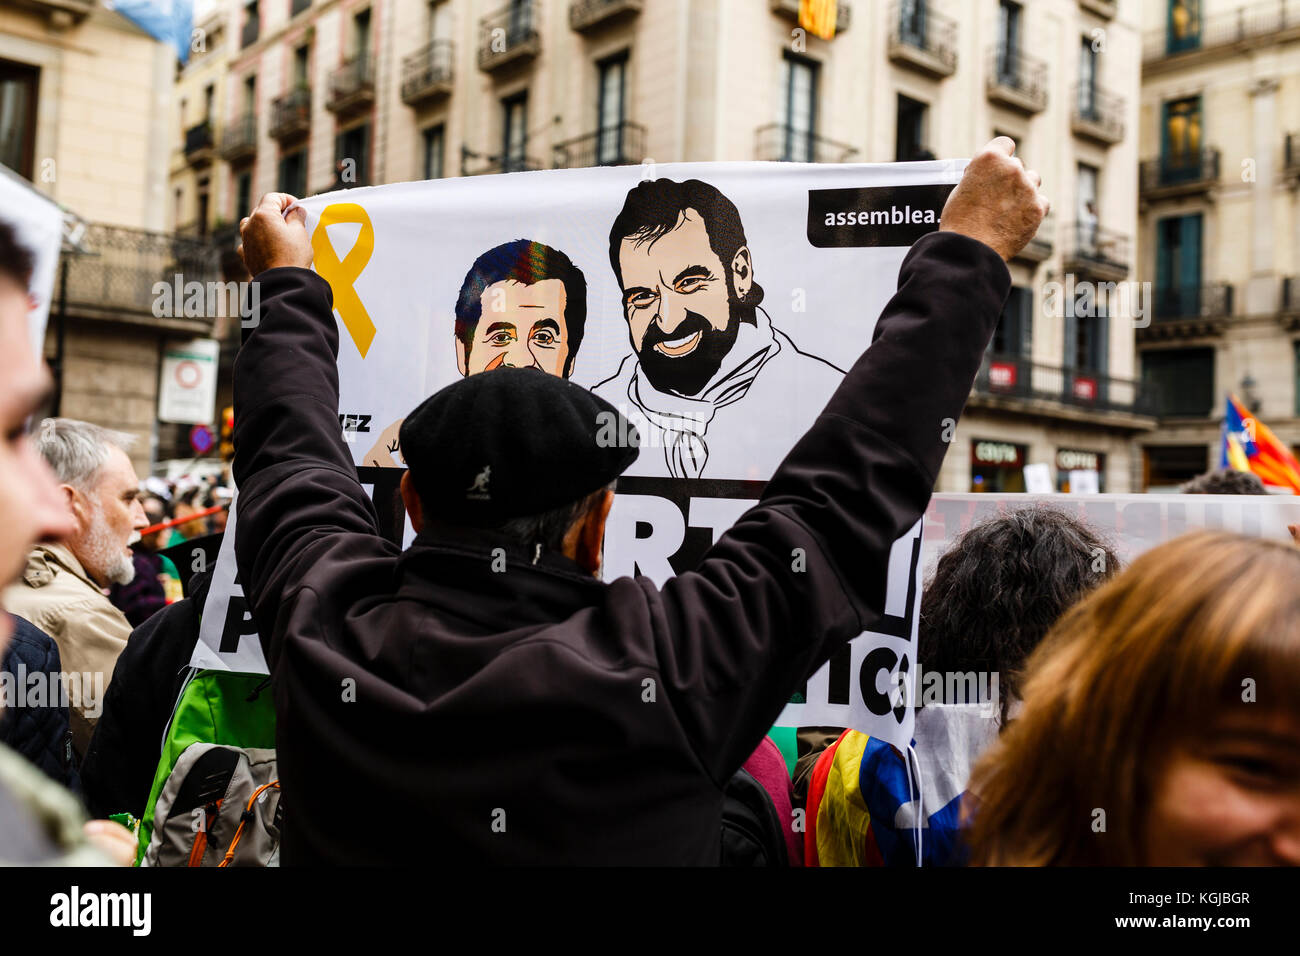 8. November 2017 - Barcelona, Barcelona, Spanien - Demonstranten, die während der Konzentration auf dem Sant Jaume's Square, Barcelona für die Freiheit politischer Gefangener aufriefen Quelle: Joan Gosa Badia/Alamy Stockfoto